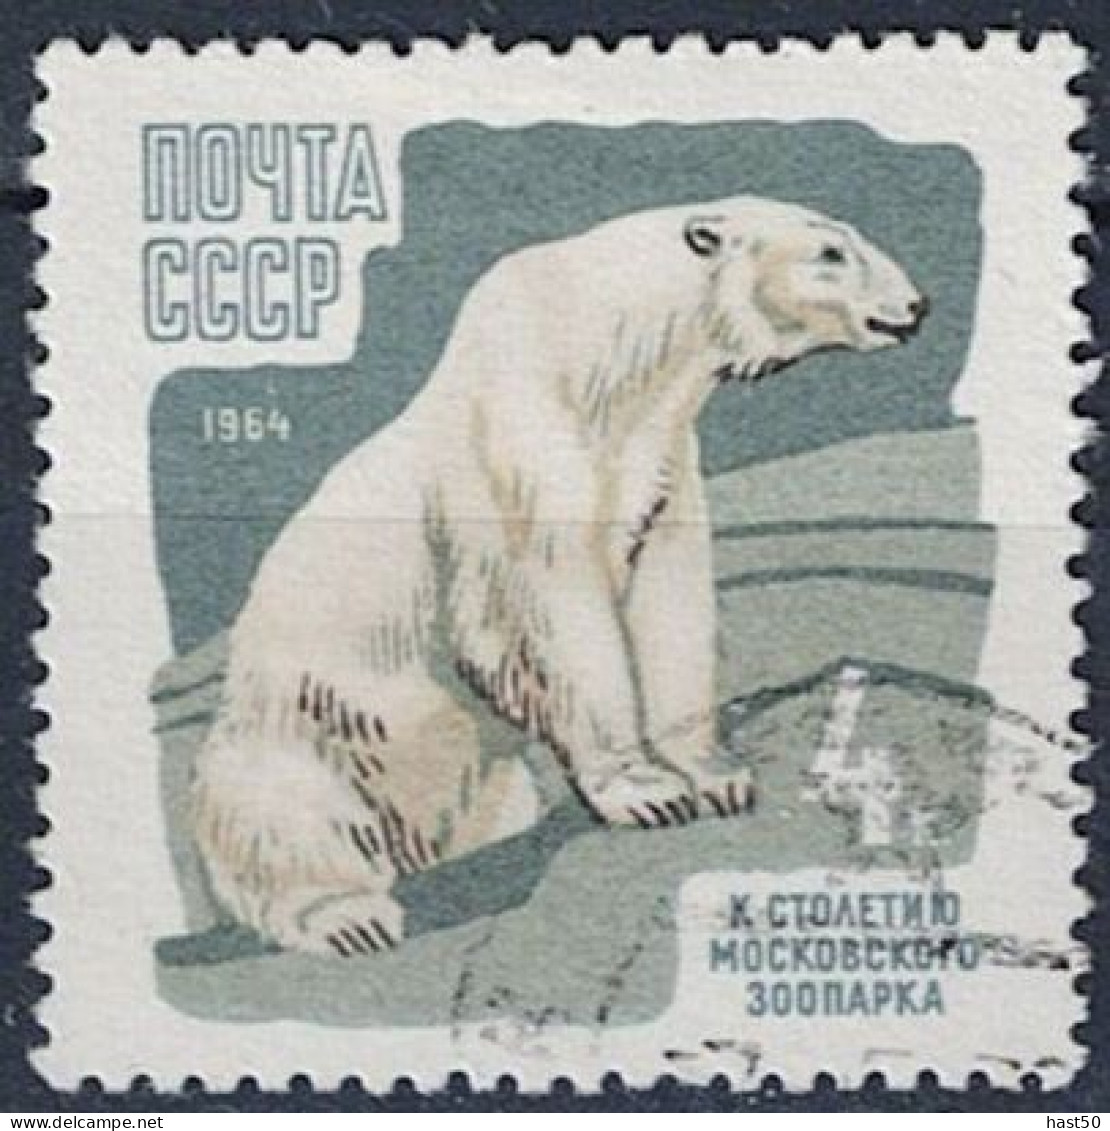 Sowjetunion UdSSR - Eisbär (Ursus Maritimus) (MiNr. 2916) 1964 - Gest Used Obl - Used Stamps